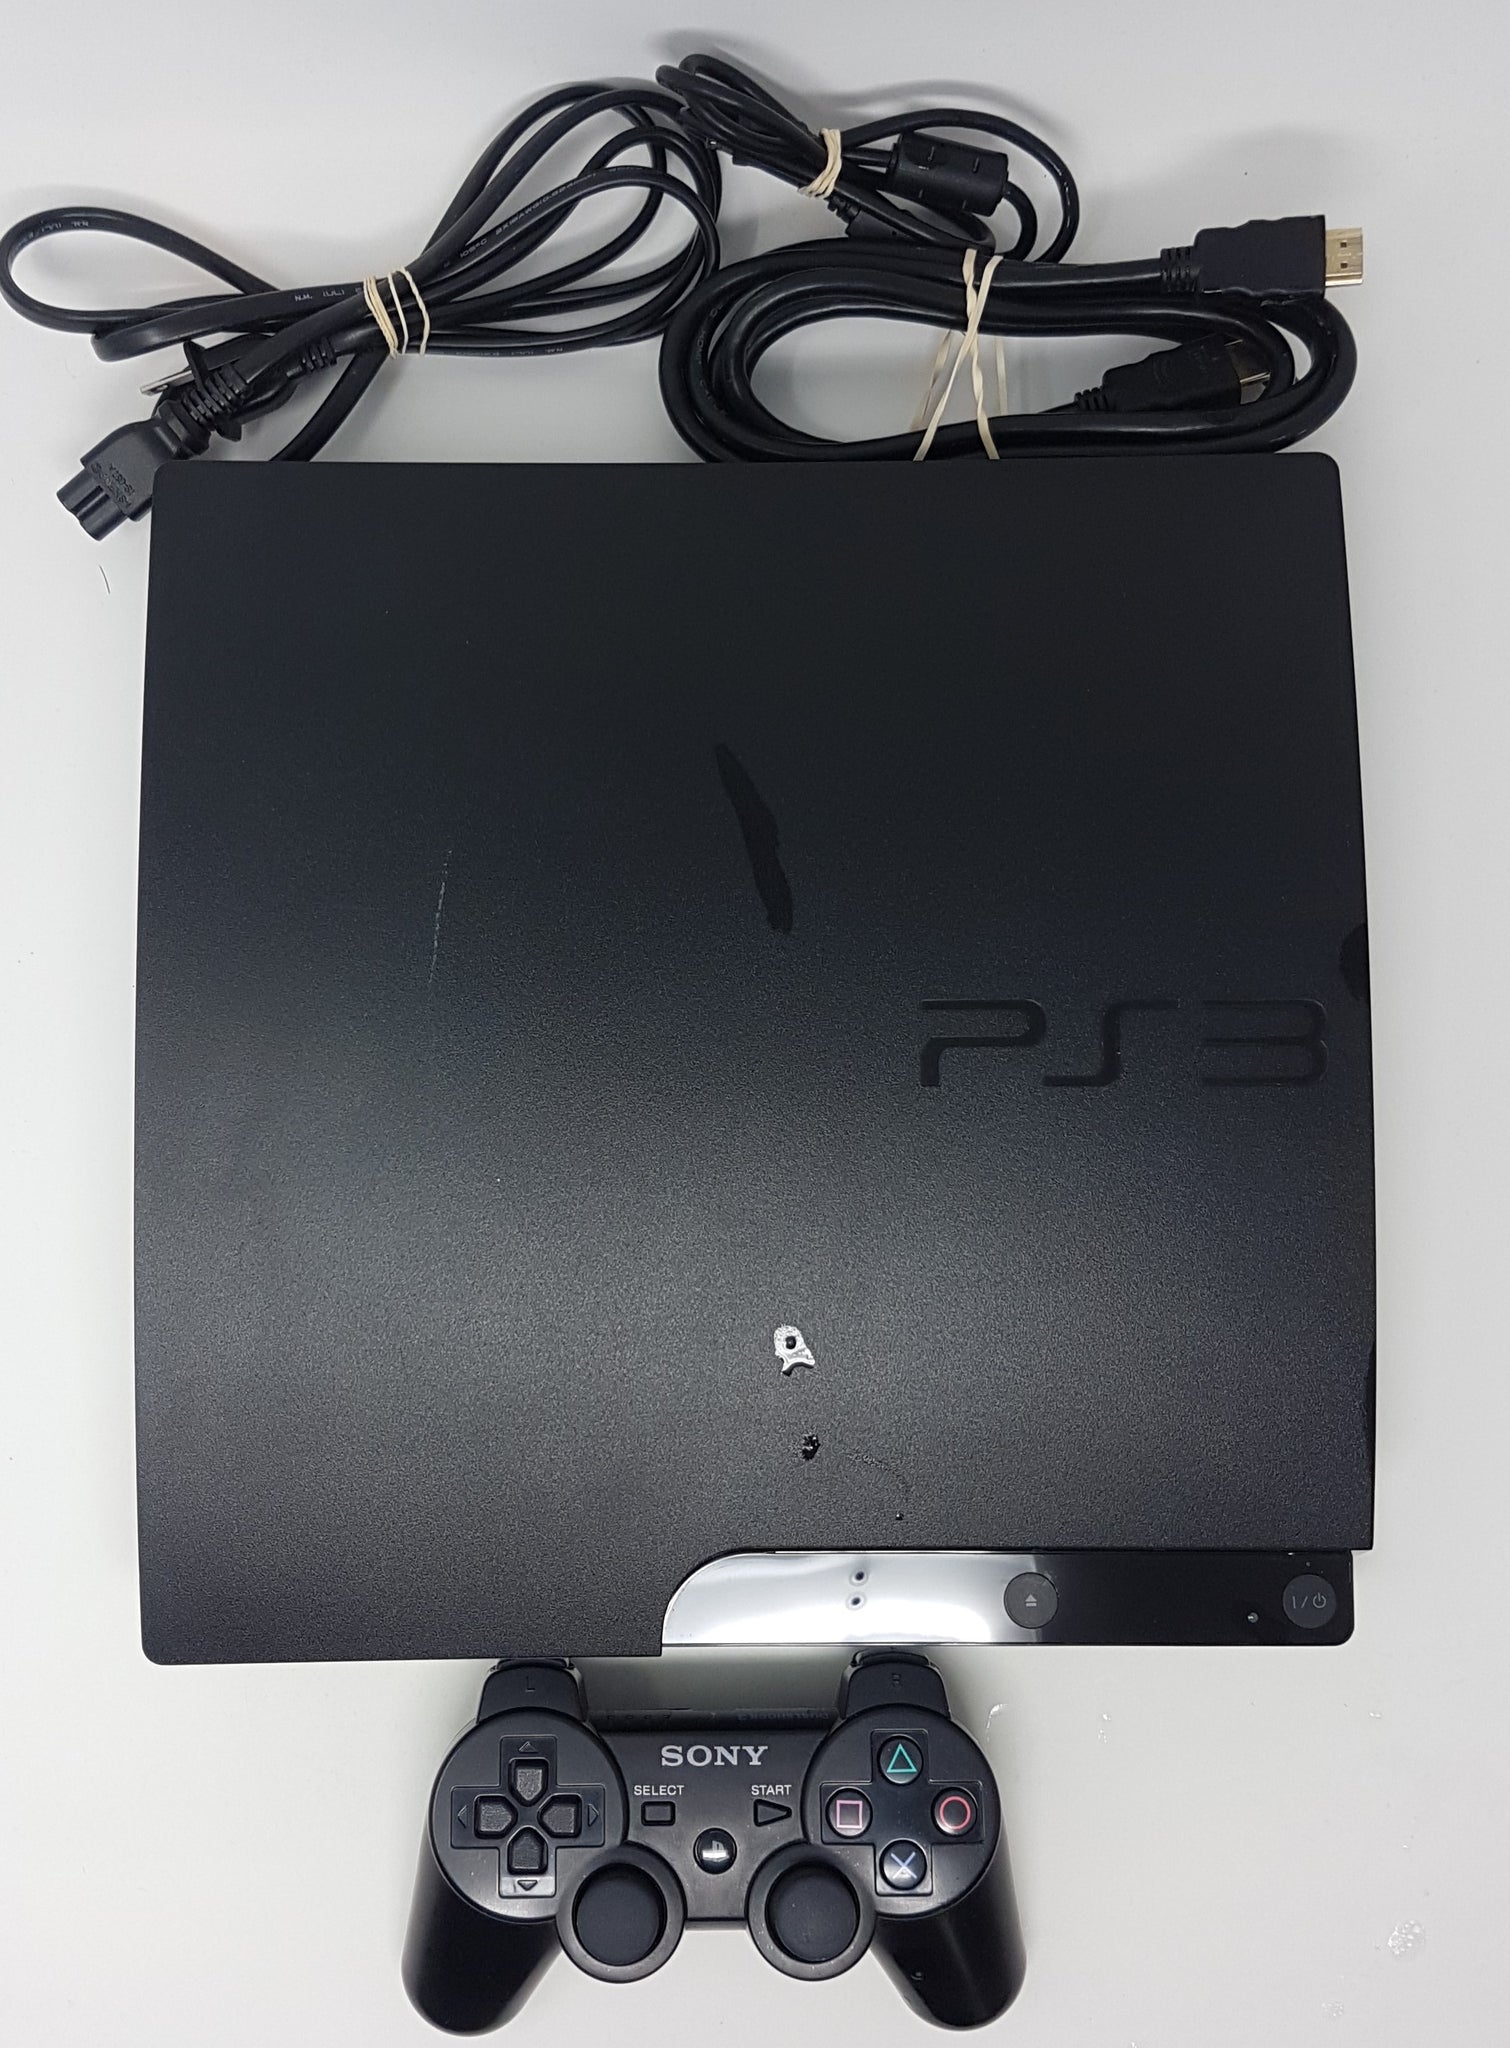 Sony Playstation 3 160GB System 